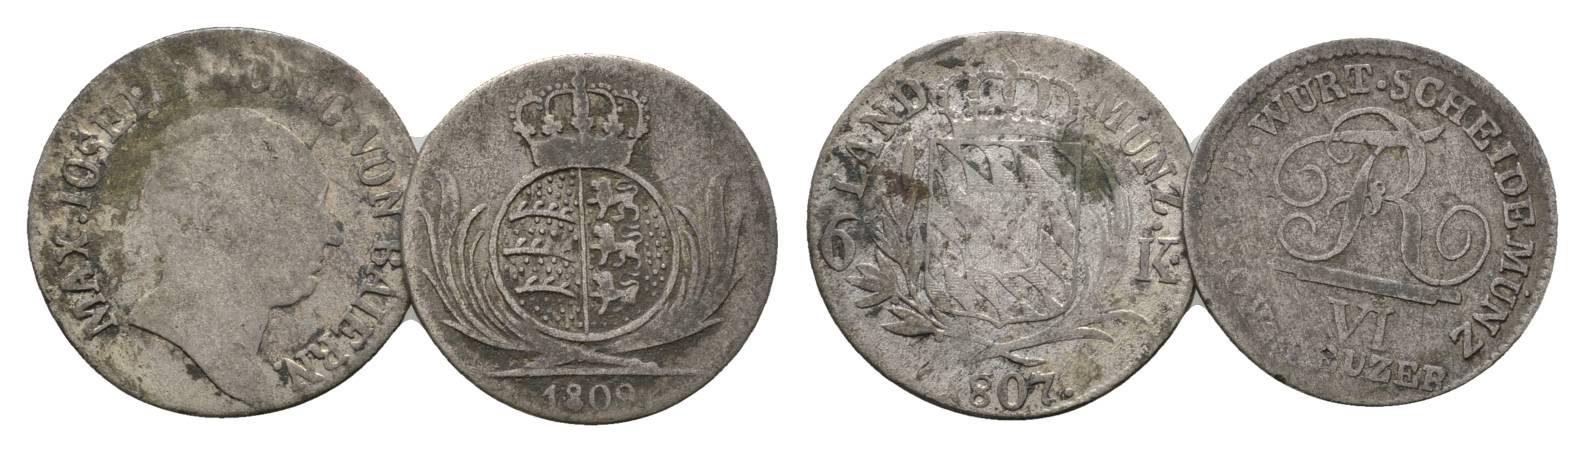  Altdeutschland, 2 Kleinmünzen (1807/1809)   